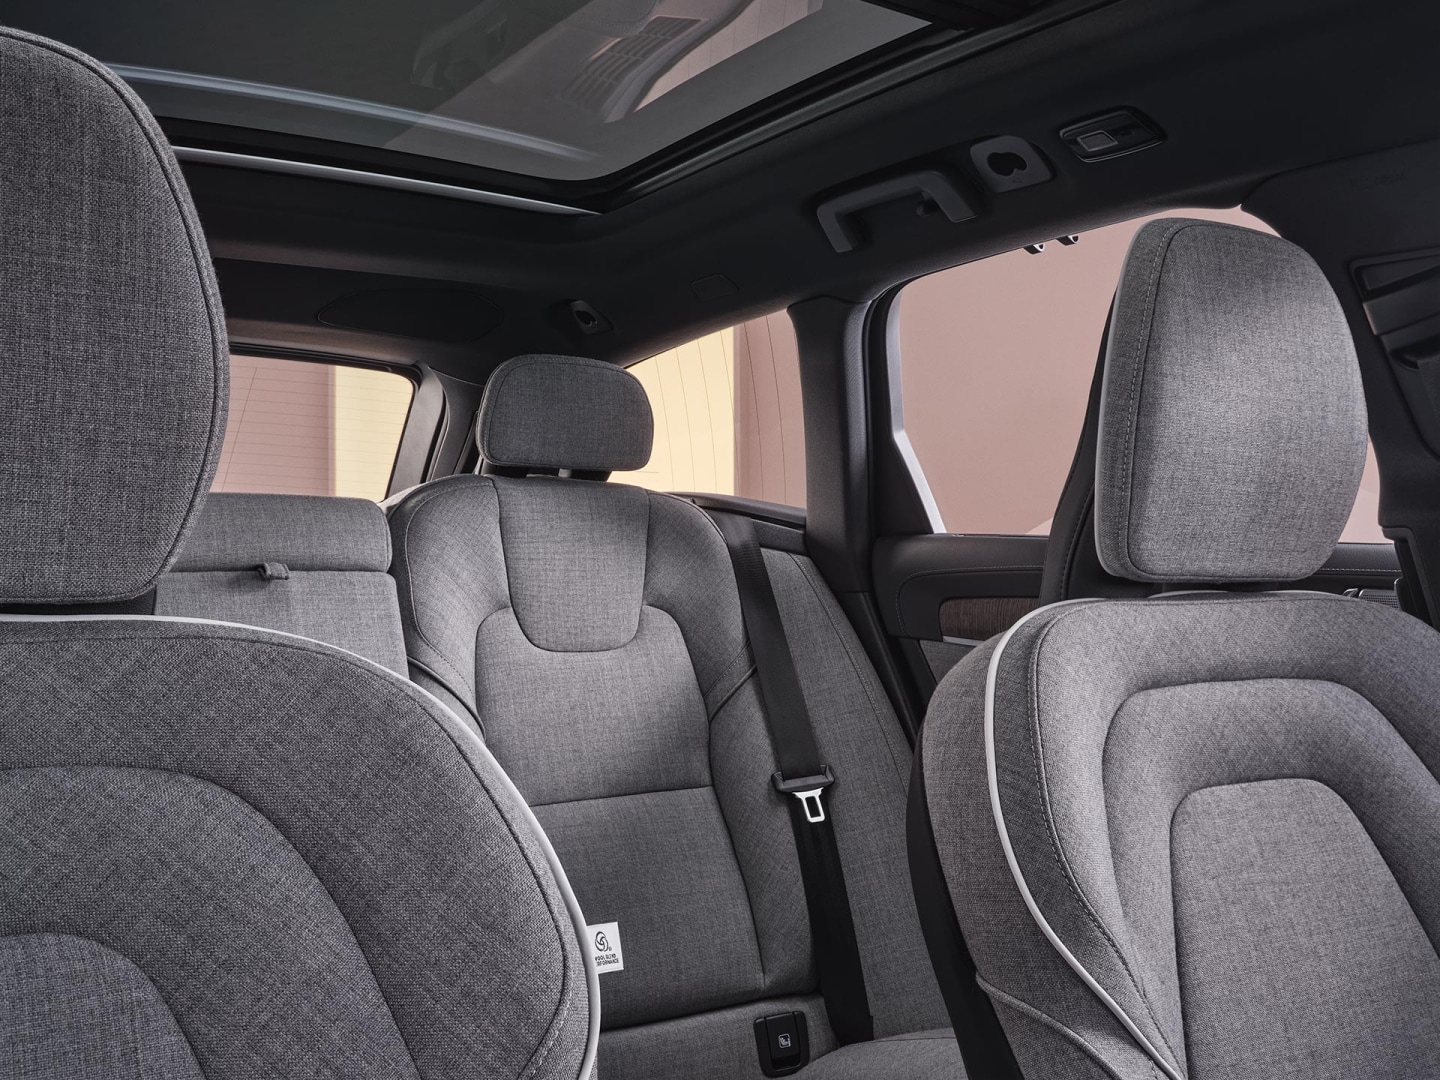 Vista general del diseño interior y la tapicería de mezcla de lana personalizada del Volvo V90 híbrido enchufable.